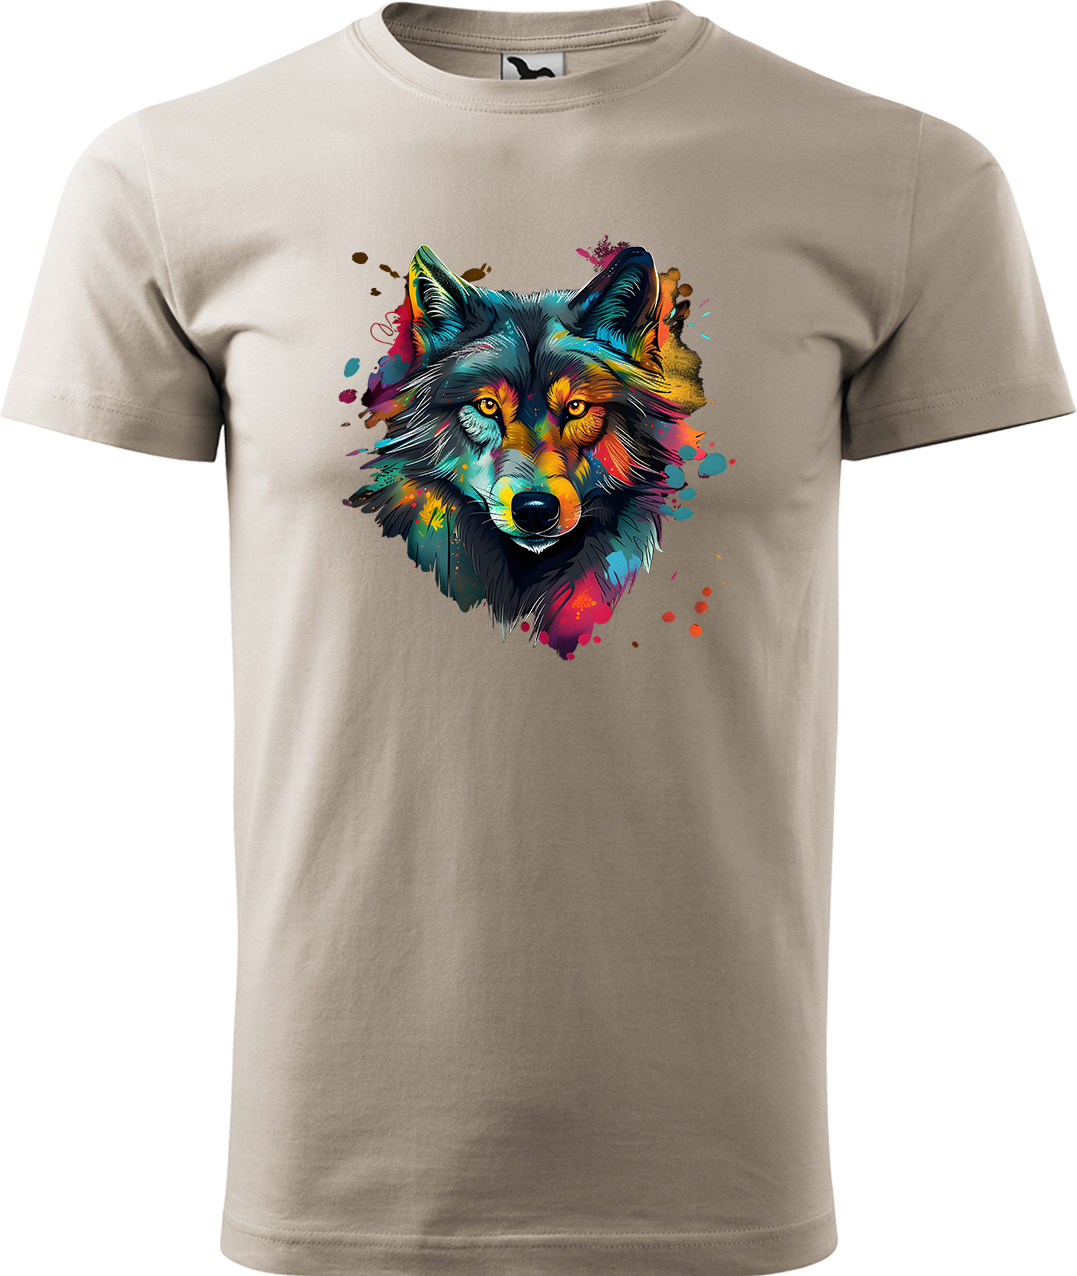 Pánské tričko s vlkem - Malovaný vlk Velikost: M, Barva: Béžová (51), Střih: pánský